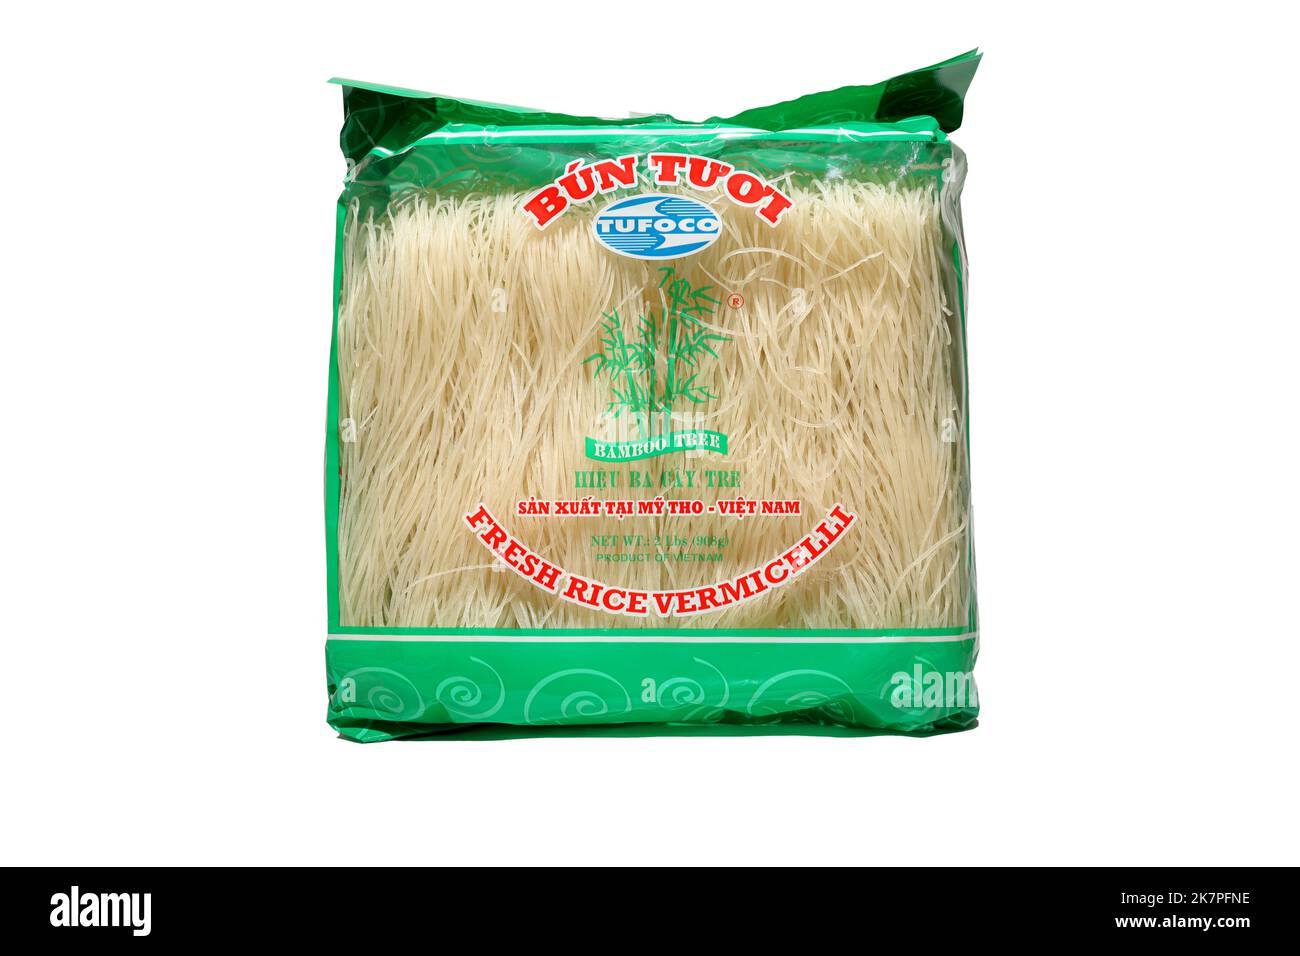 Un pacchetto da 2 lb di Tufoco Bamboo Tree, marchio Fresh Rice Vermicelli Bún Tươi, isolato su uno sfondo bianco. immagine ritagliata per illustrazione ed editoriale. Foto Stock